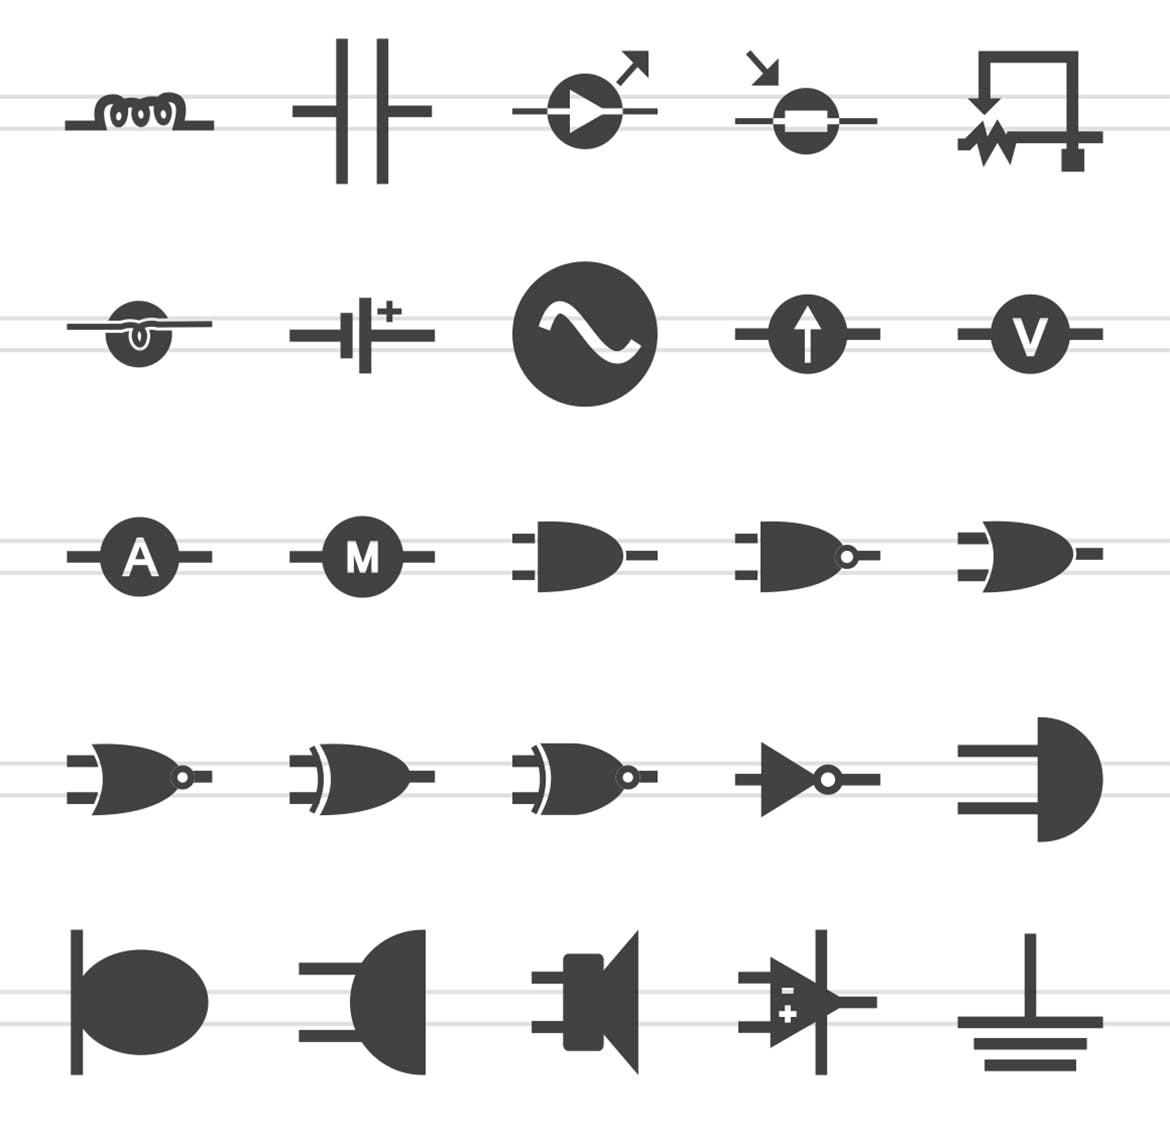 50枚电路线路板主题黑色字体第一素材精选图标 50 Electric Circuits Glyph Icons插图(2)